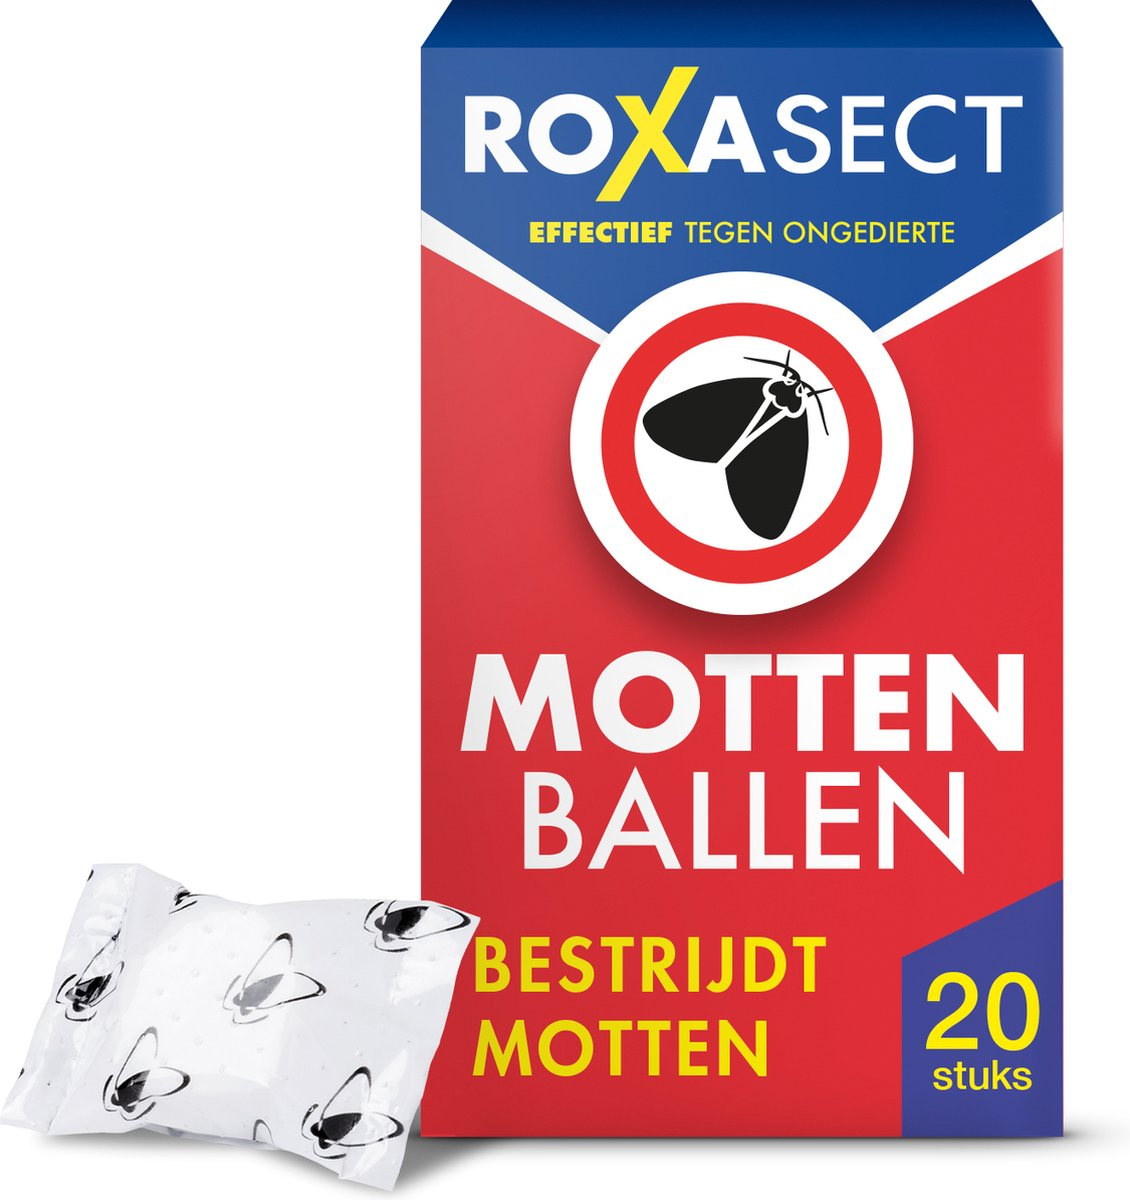 Roxasect Mottenballen – Insectenbestrijding – 20 stuks. Ook voor in kledingzakken